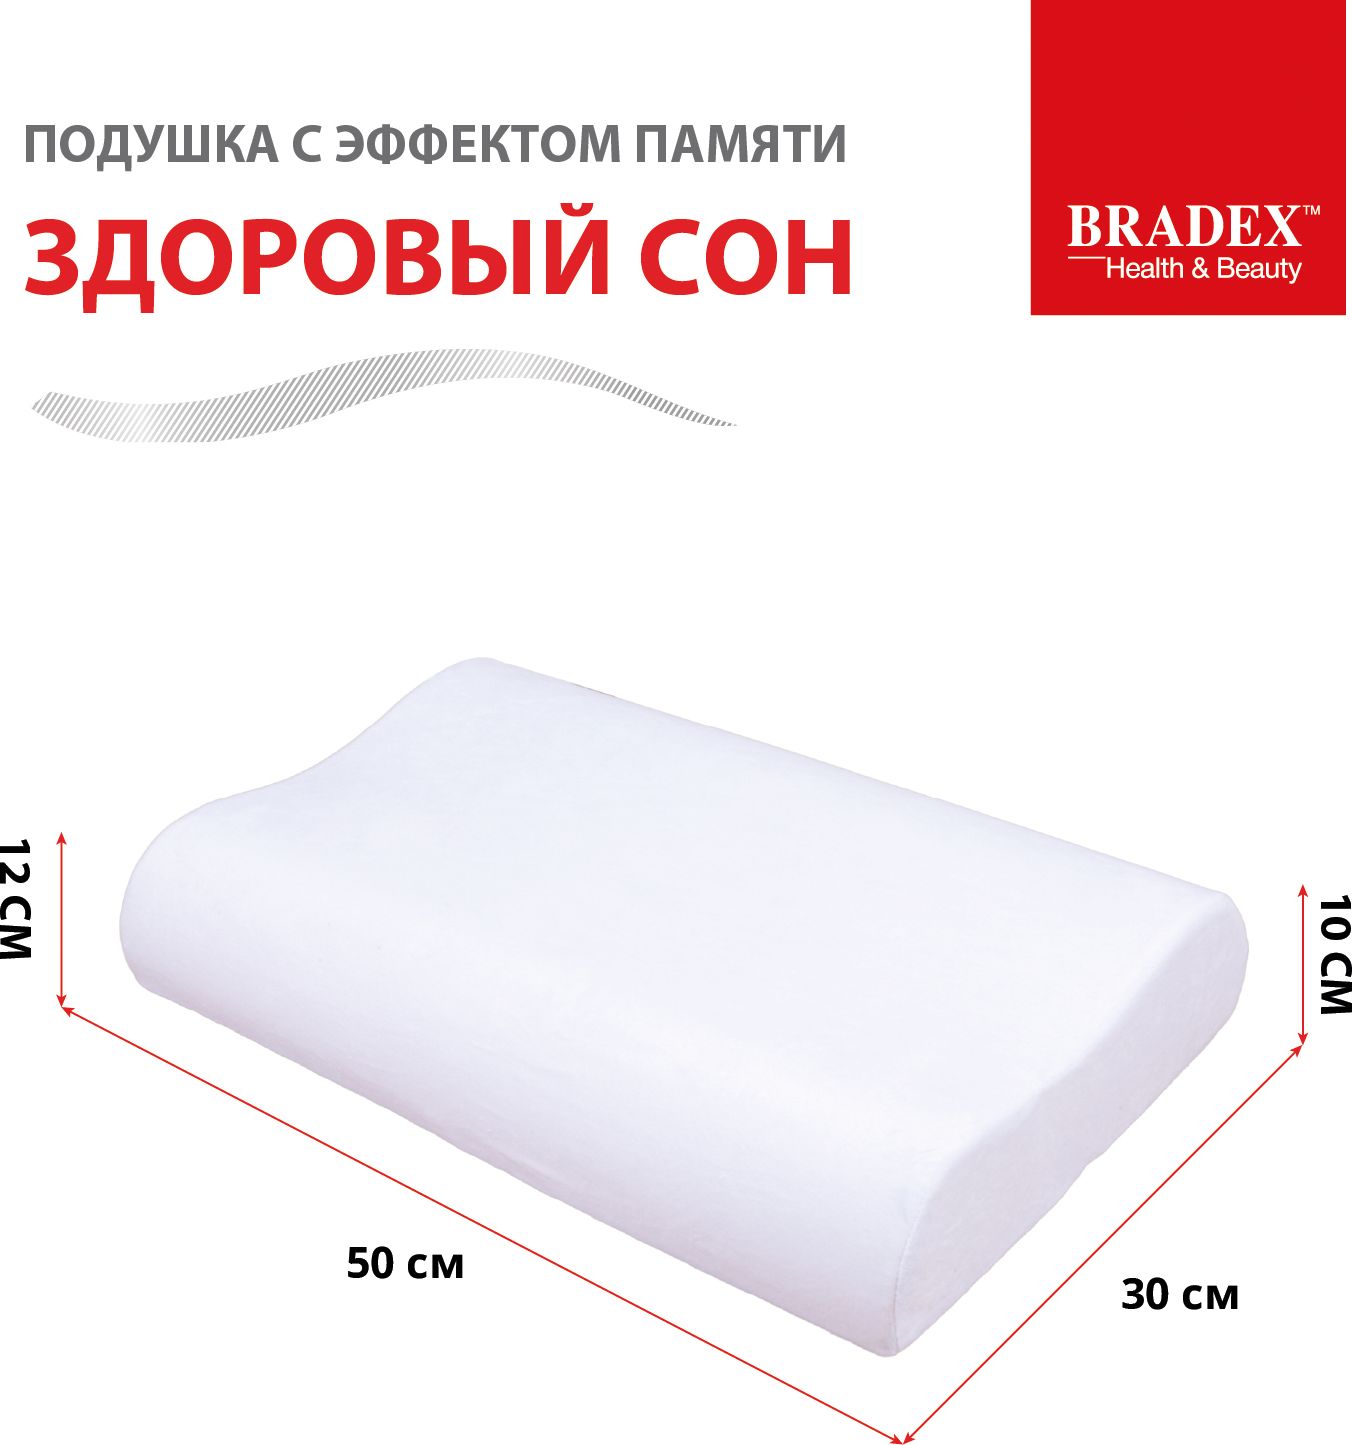 Подушка с эффектом памяти «ЗДОРОВЫЙ СОН», BRADEX, размер 30*50 см